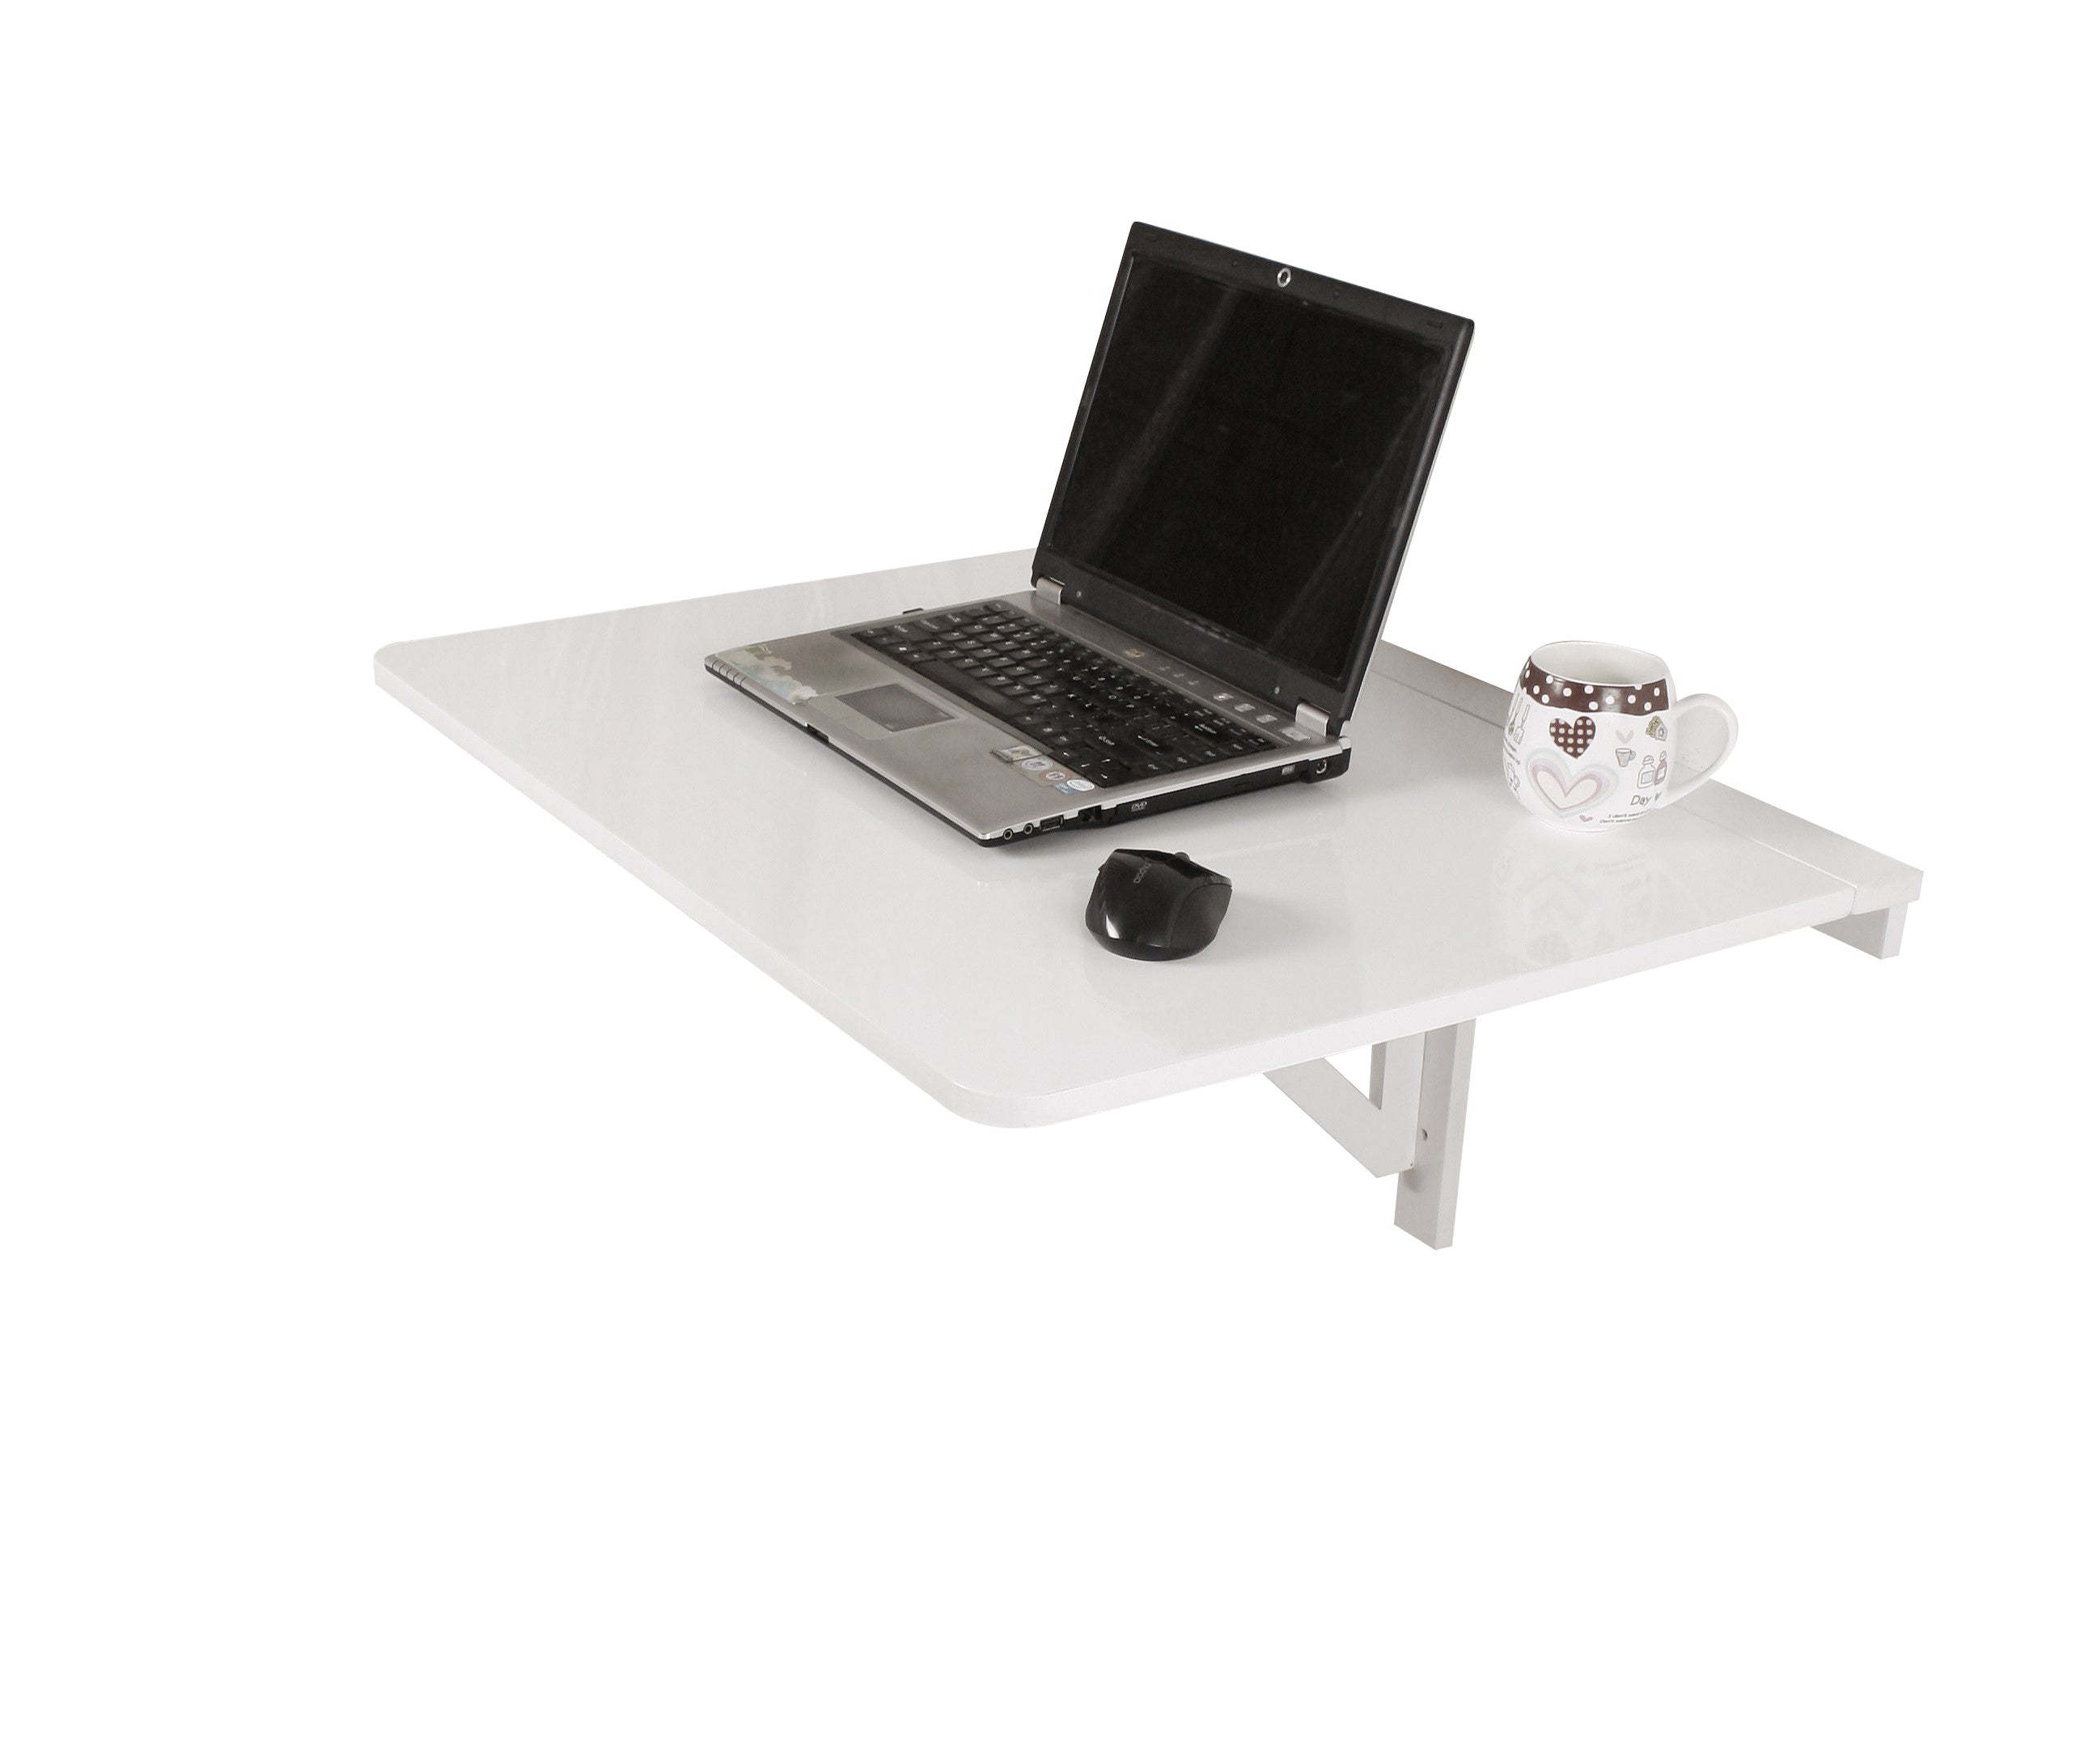 SoBuy® Mesa de cocina, mesa de madera, mesa plegable de pared, mesa de  comedor, escritorio, mesa, plegable …